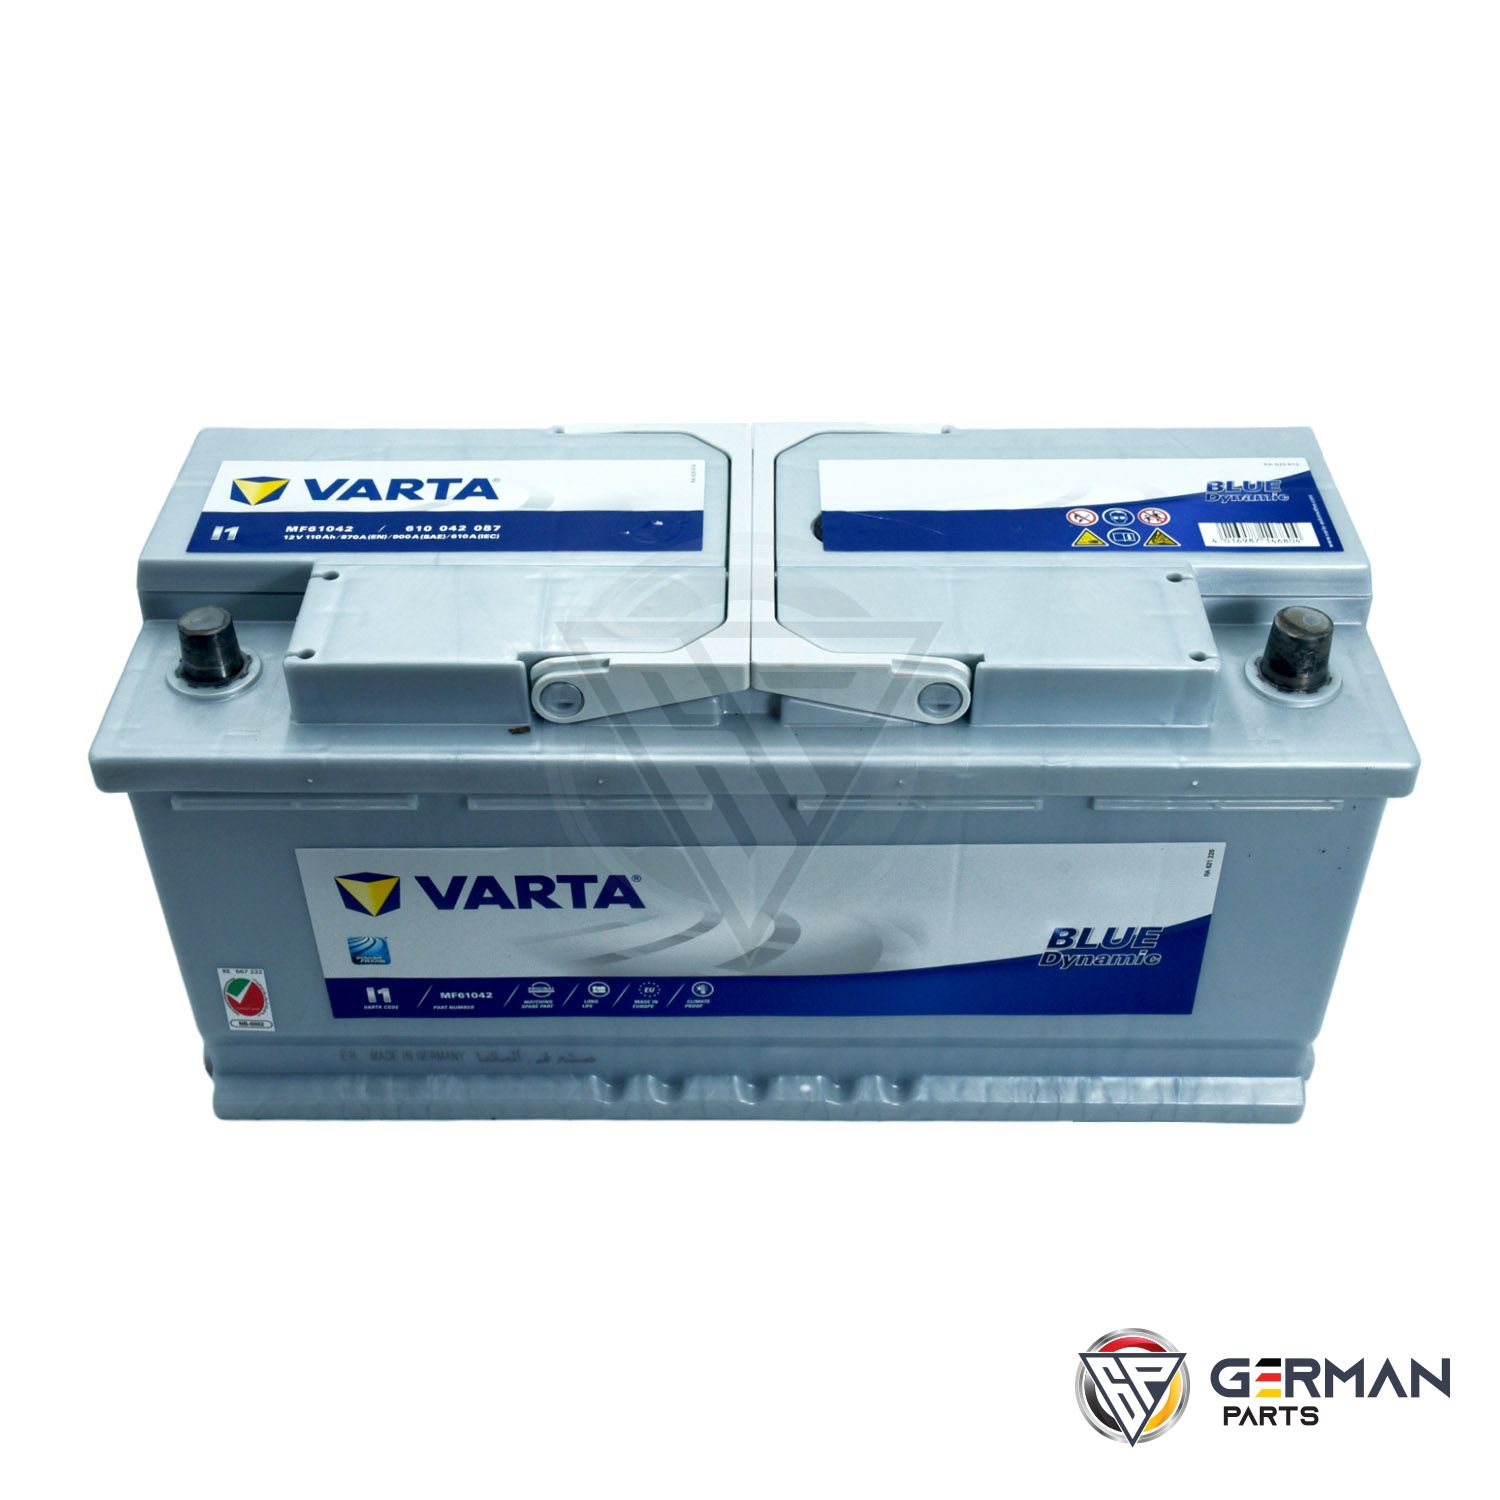 studie Lee Kan Buy Varta Battery 110 Ah DIN110MFV-11 - German Parts